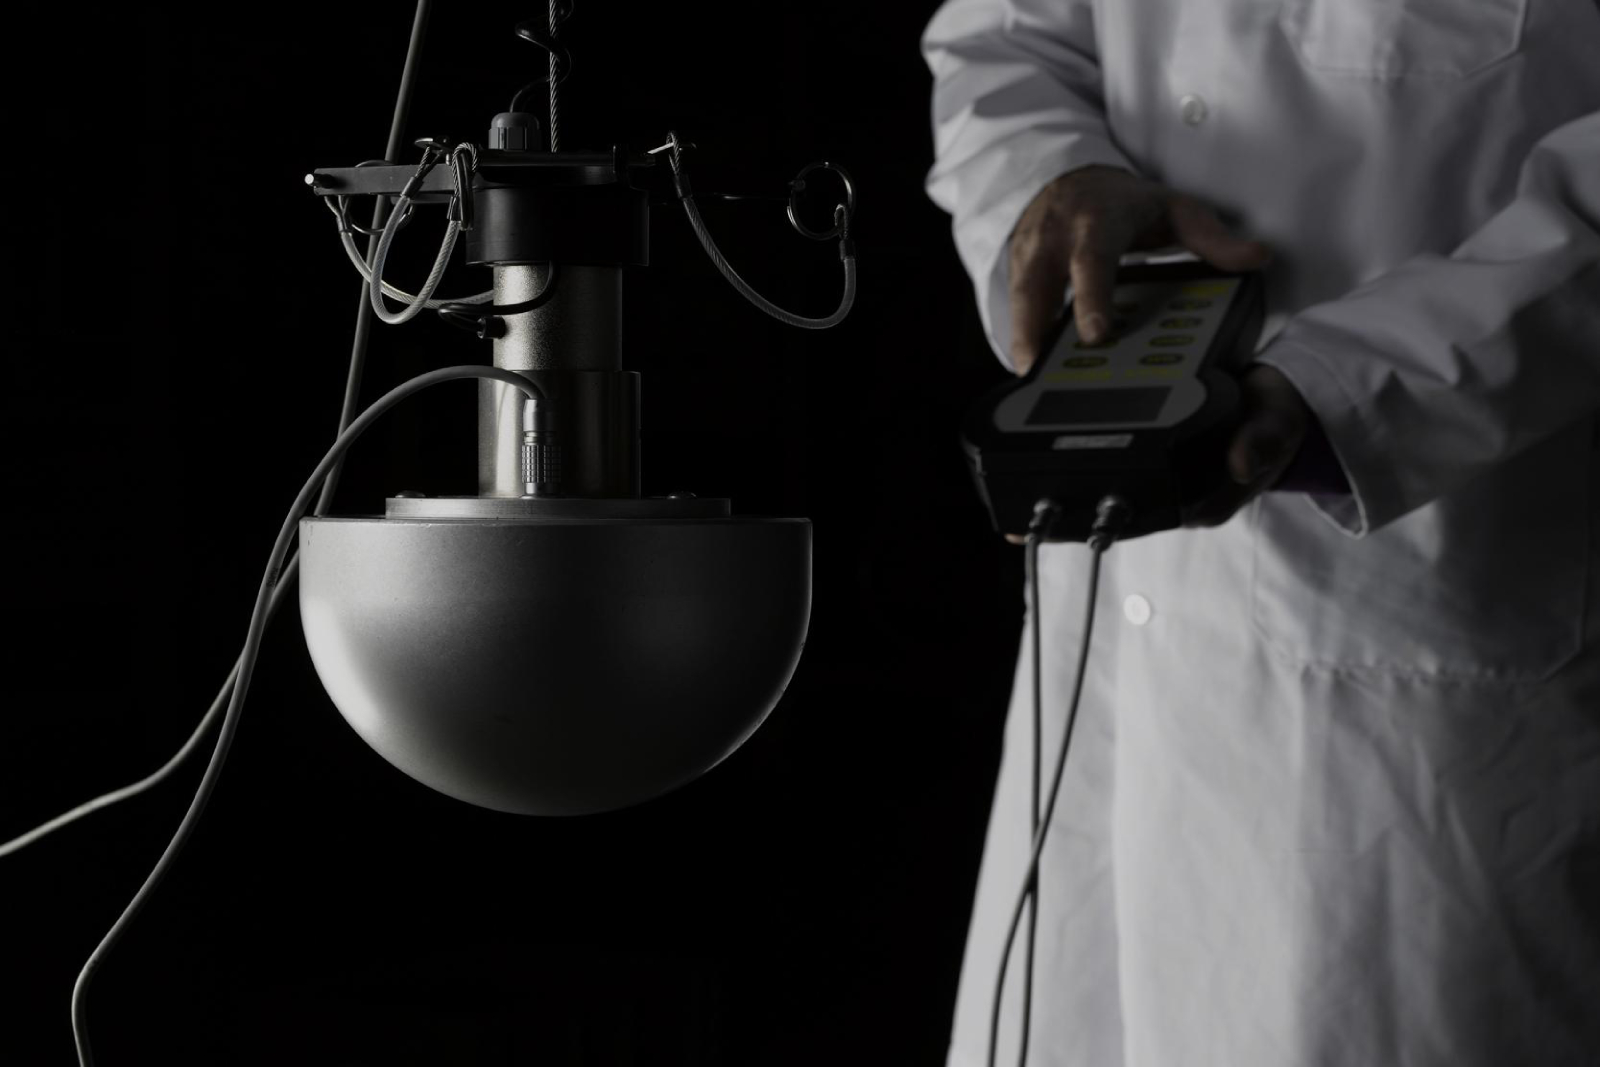 Fotografía de un operario del IBV usando uno de los aparatos para pruebas biomecánicas